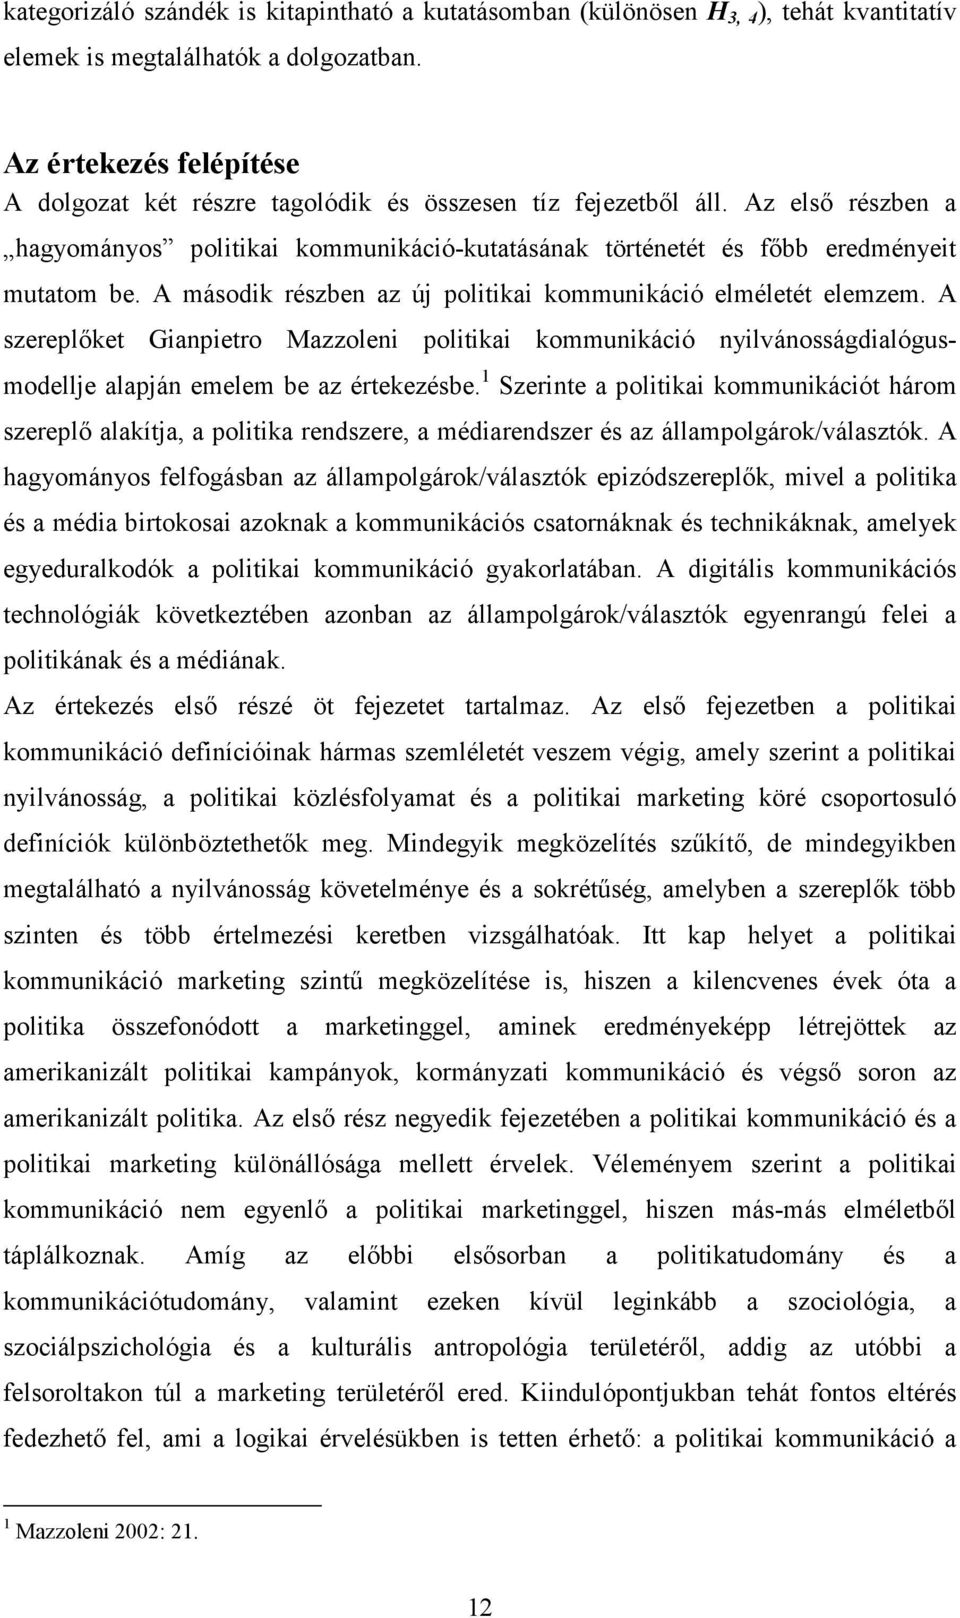 A második részben az új politikai kommunikáció elméletét elemzem. A szereplıket Gianpietro Mazzoleni politikai kommunikáció nyilvánosságdialógusmodellje alapján emelem be az értekezésbe.